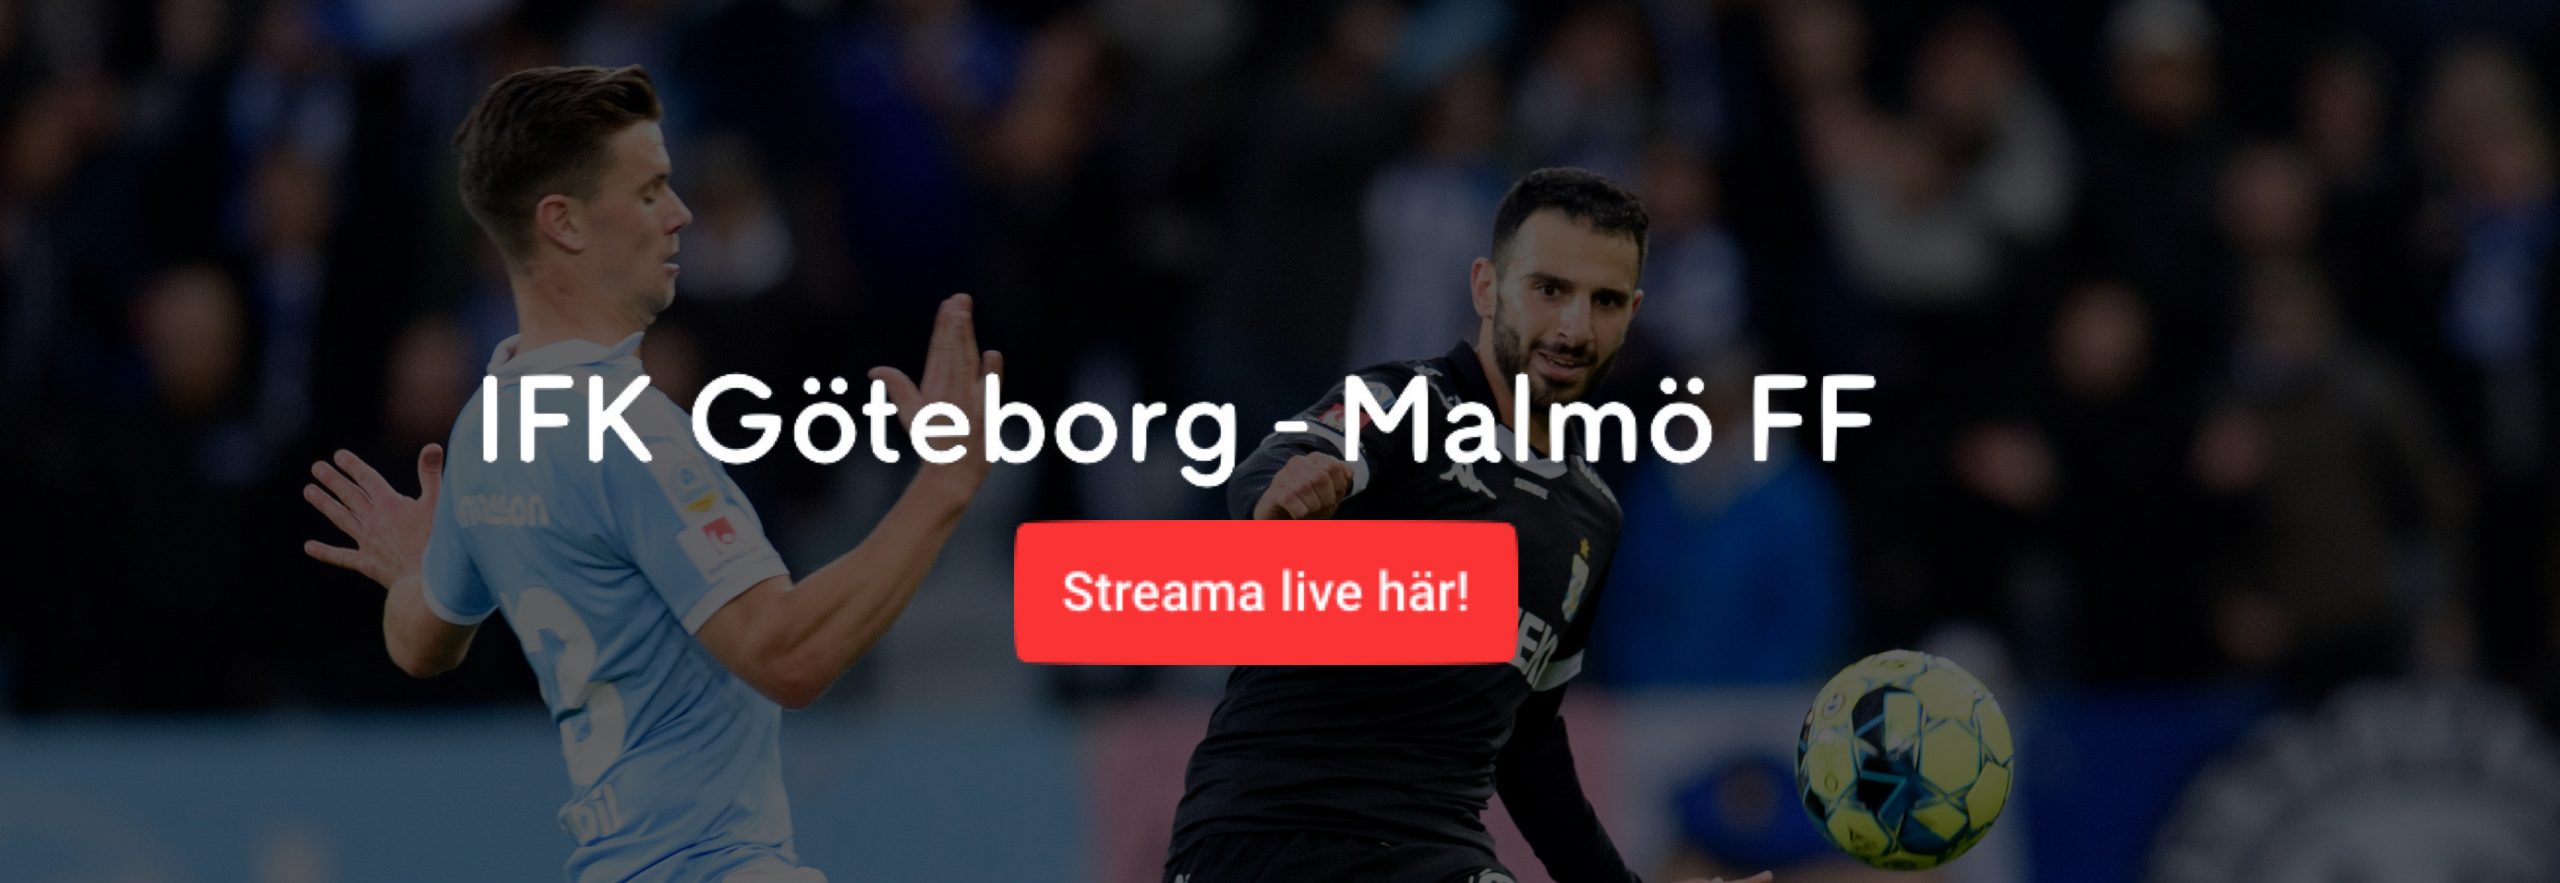 Malmö FF IFK Göteborg streaming? Streama Göteborg MFF livestreaming!